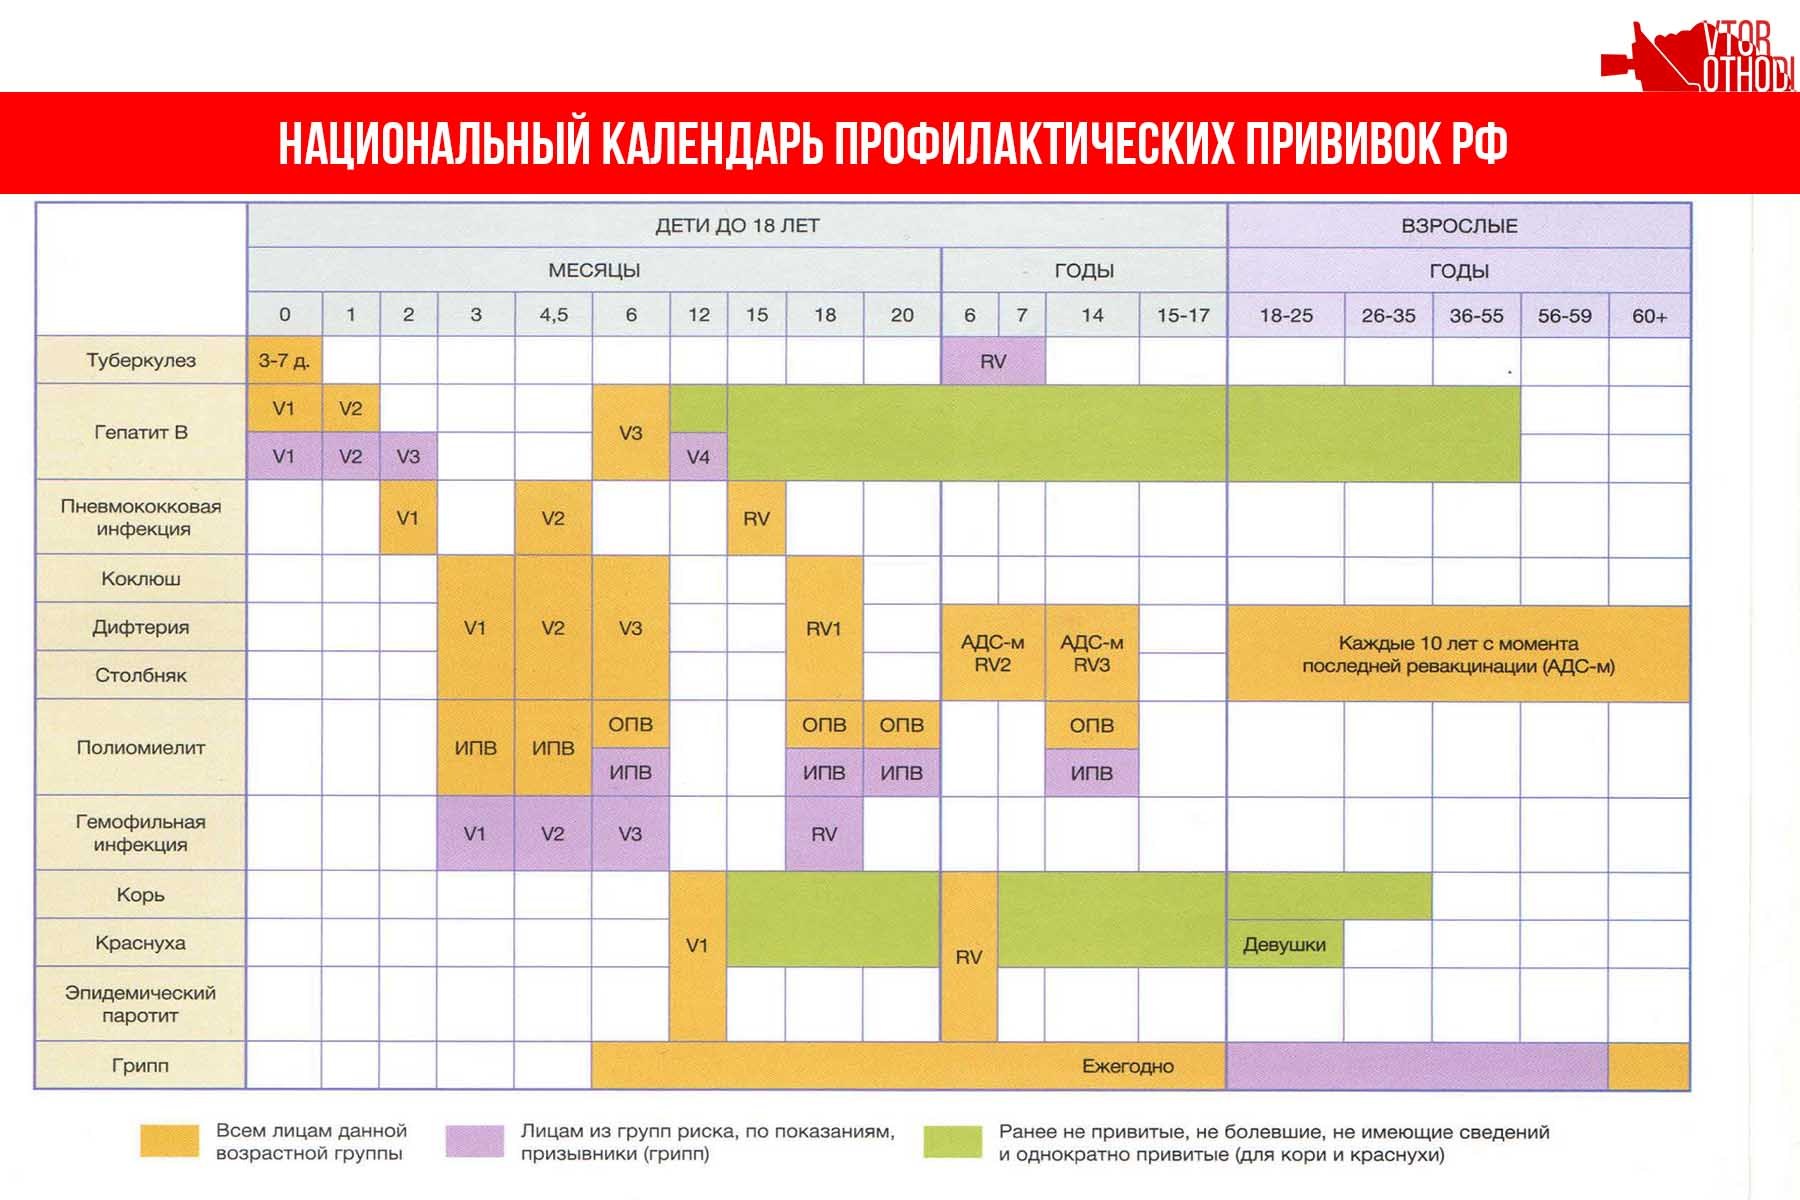 Календарь прививок до года 2024. Краснуха национальный календарь прививок. Эпидемический паротит национальный календарь прививок. Национальный календарь прививок для детей до 1 года в России. Календарь прививок для детей в России 2021 национальный календарь.